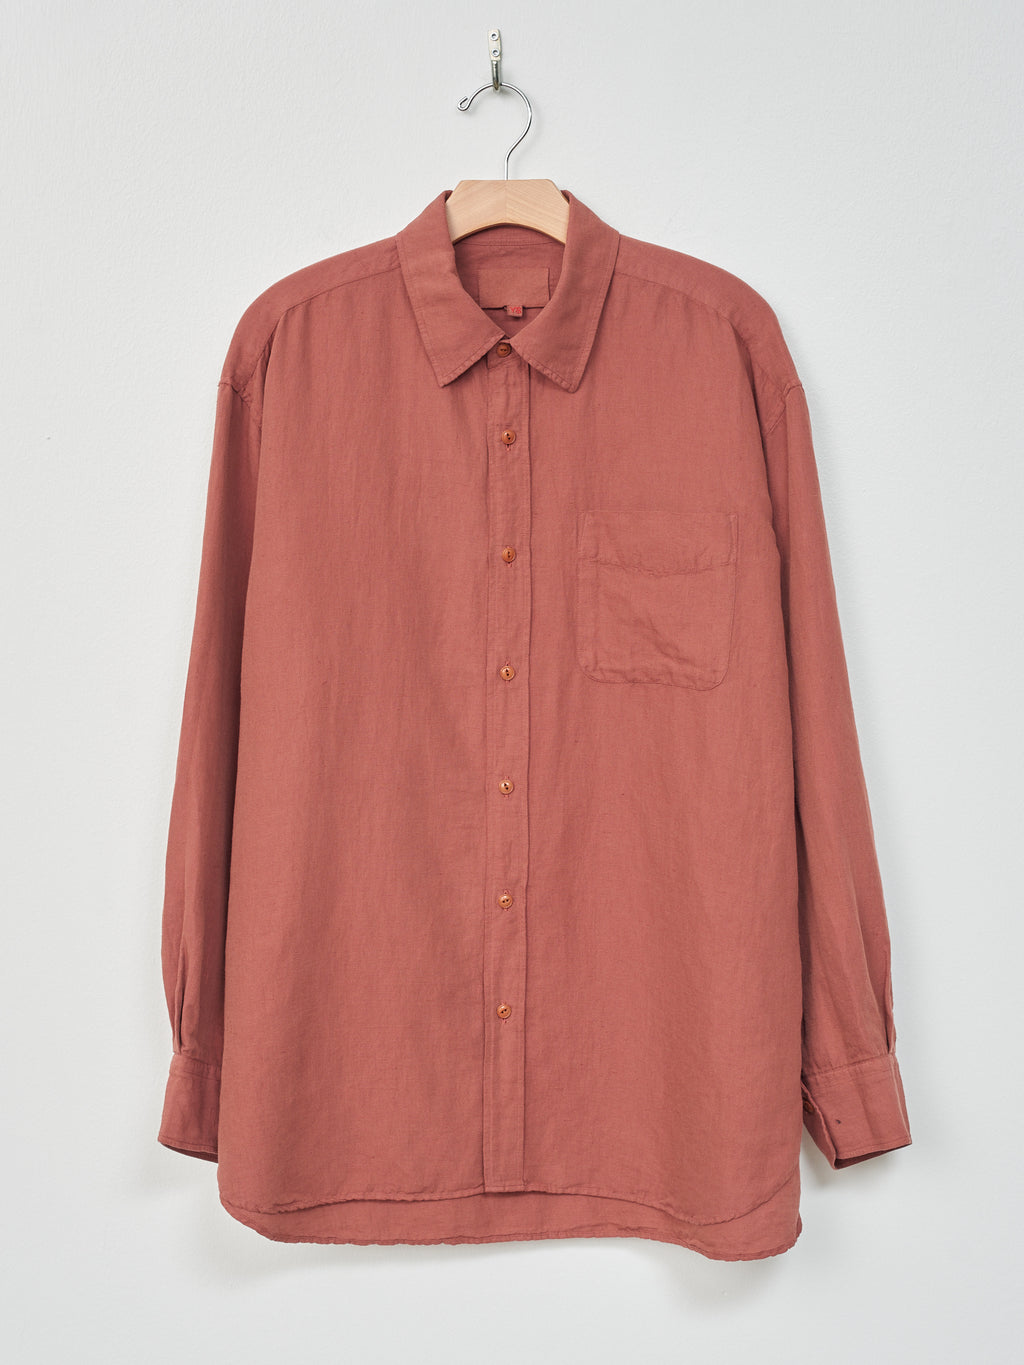 Namu Shop - Yoko Sakamoto Regular Collar Shirt - Red